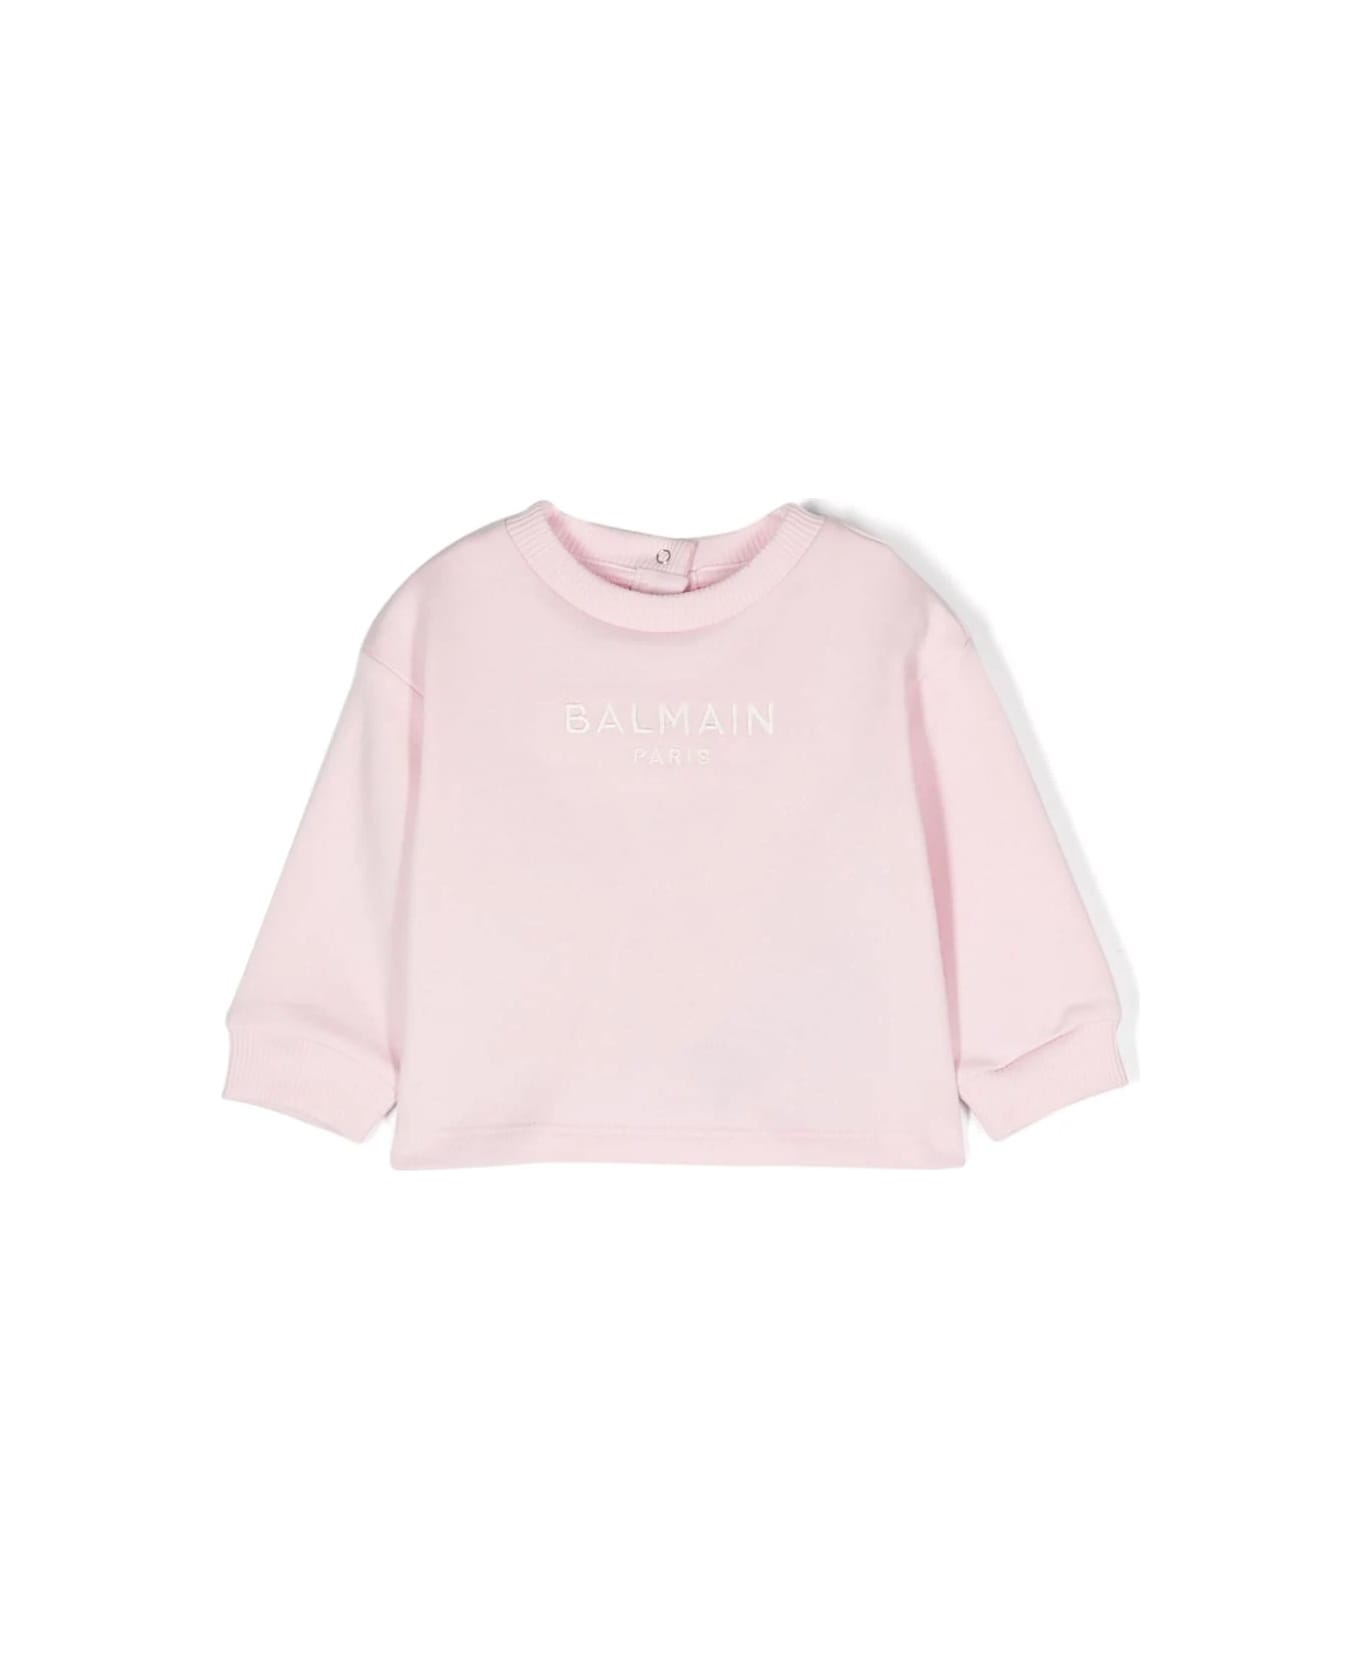 Balmain Sweatshirt With Embroidery - Pink